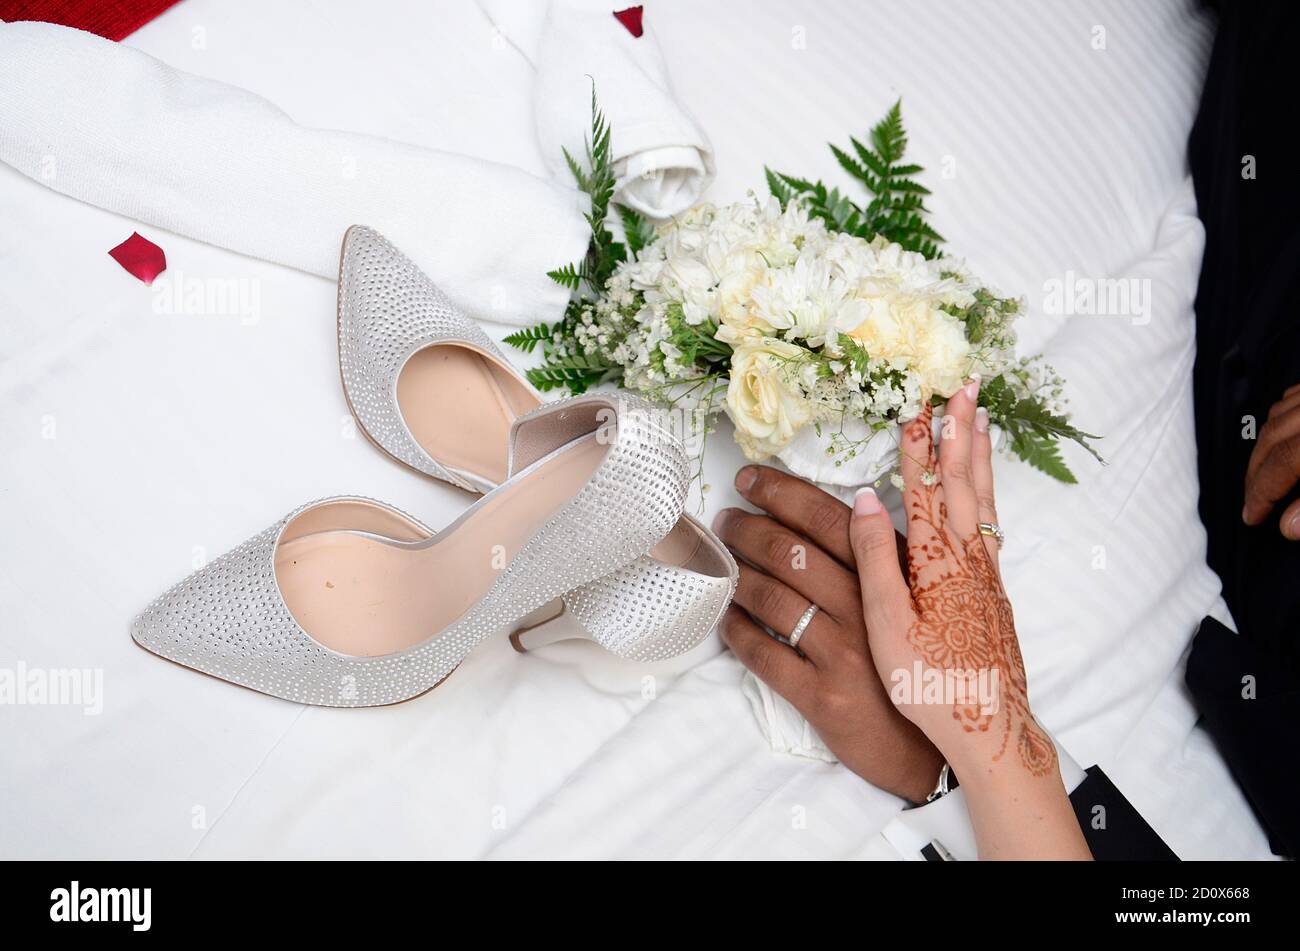 Ein Bräutigam hält die Hand der Braut. Die Hand der Braut ist mit Henna-Tattoos verziert. Im Hintergrund ein Blumenstrauß Stockfoto